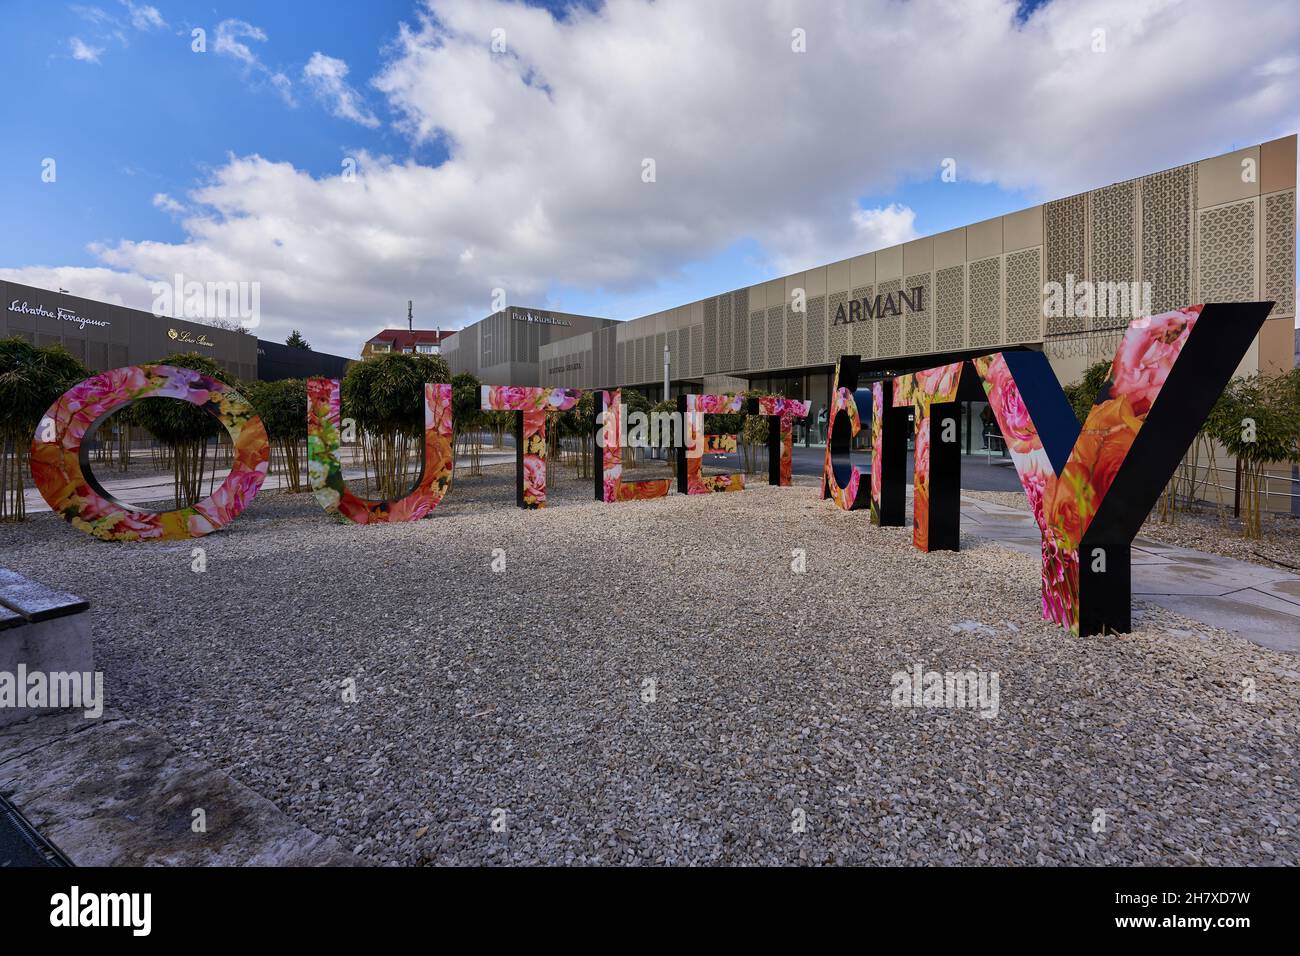 Metzingen, Deutschland - 20. März 2021: Outlet City, große bunte Buchstaben mit Blumenmuster stehen auf Kiesboden. Armani Gebäude im Hintergrund. Stockfoto